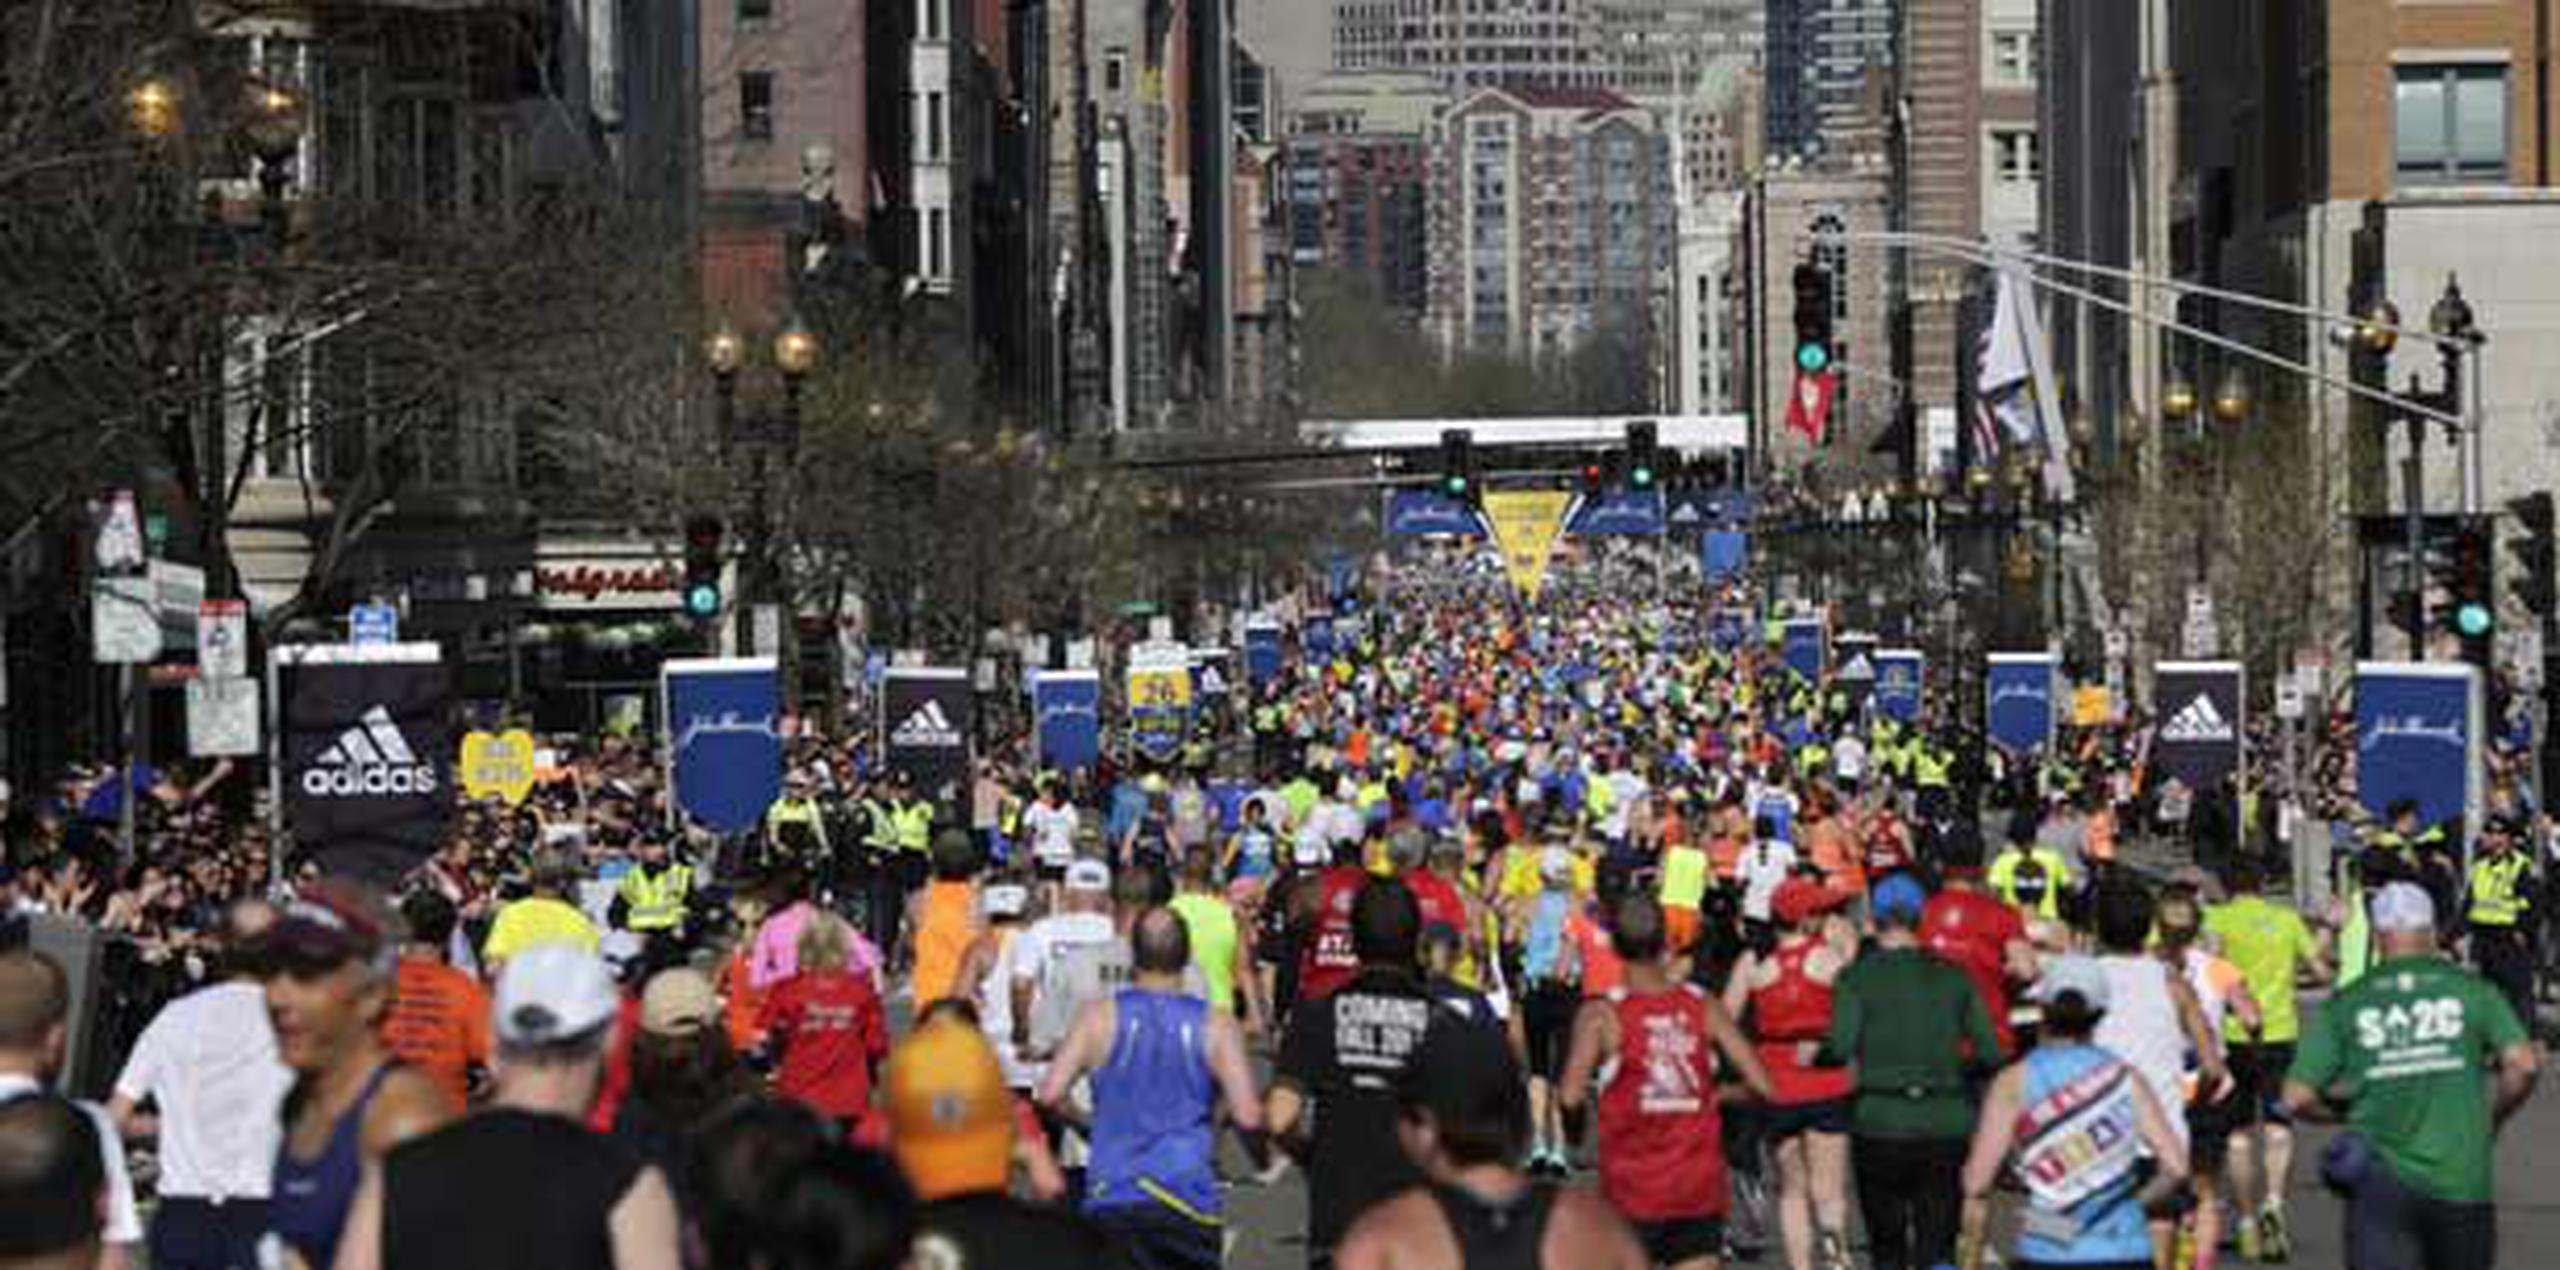 Cerca de 36,000 corredores se volcaron el lunes a las calles en el primer maratón de Boston desde el letal atentado del año pasado. (AP/Robert F. Bukaty)